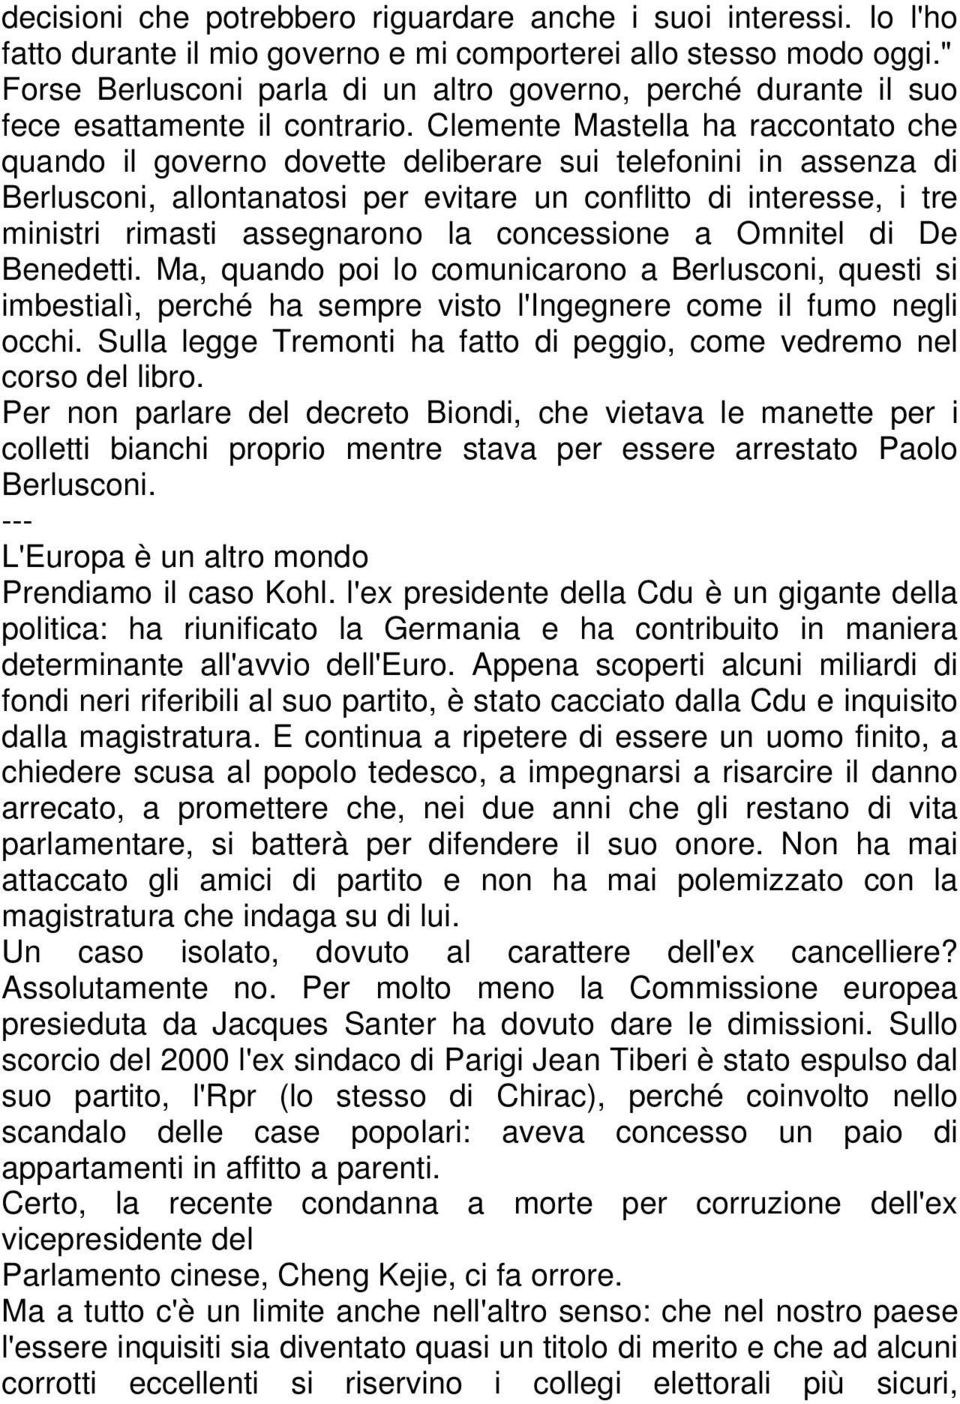 Clemente Mastella ha raccontato che quando il governo dovette deliberare sui telefonini in assenza di Berlusconi, allontanatosi per evitare un conflitto di interesse, i tre ministri rimasti